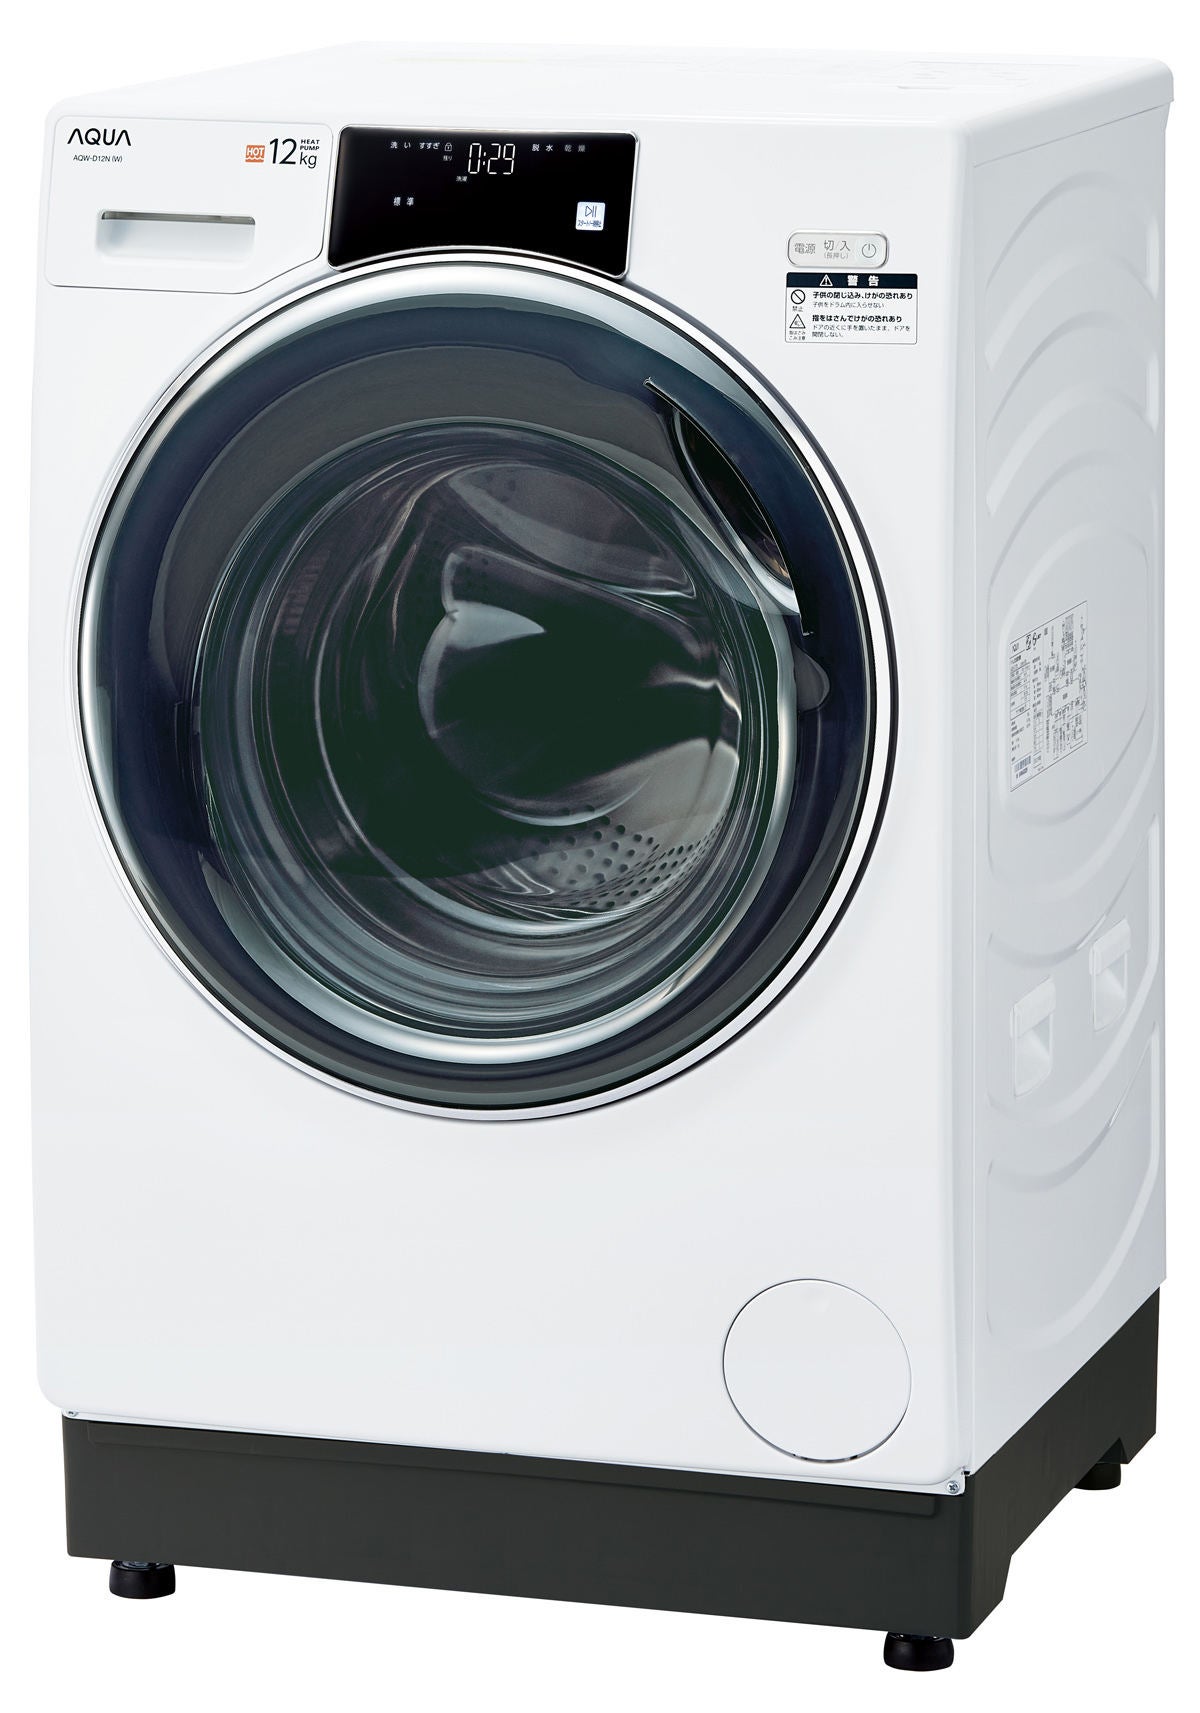 AQUA アクア 5Kg 全自動洗濯機 ※2020年製 説明書付属 - 洗濯機